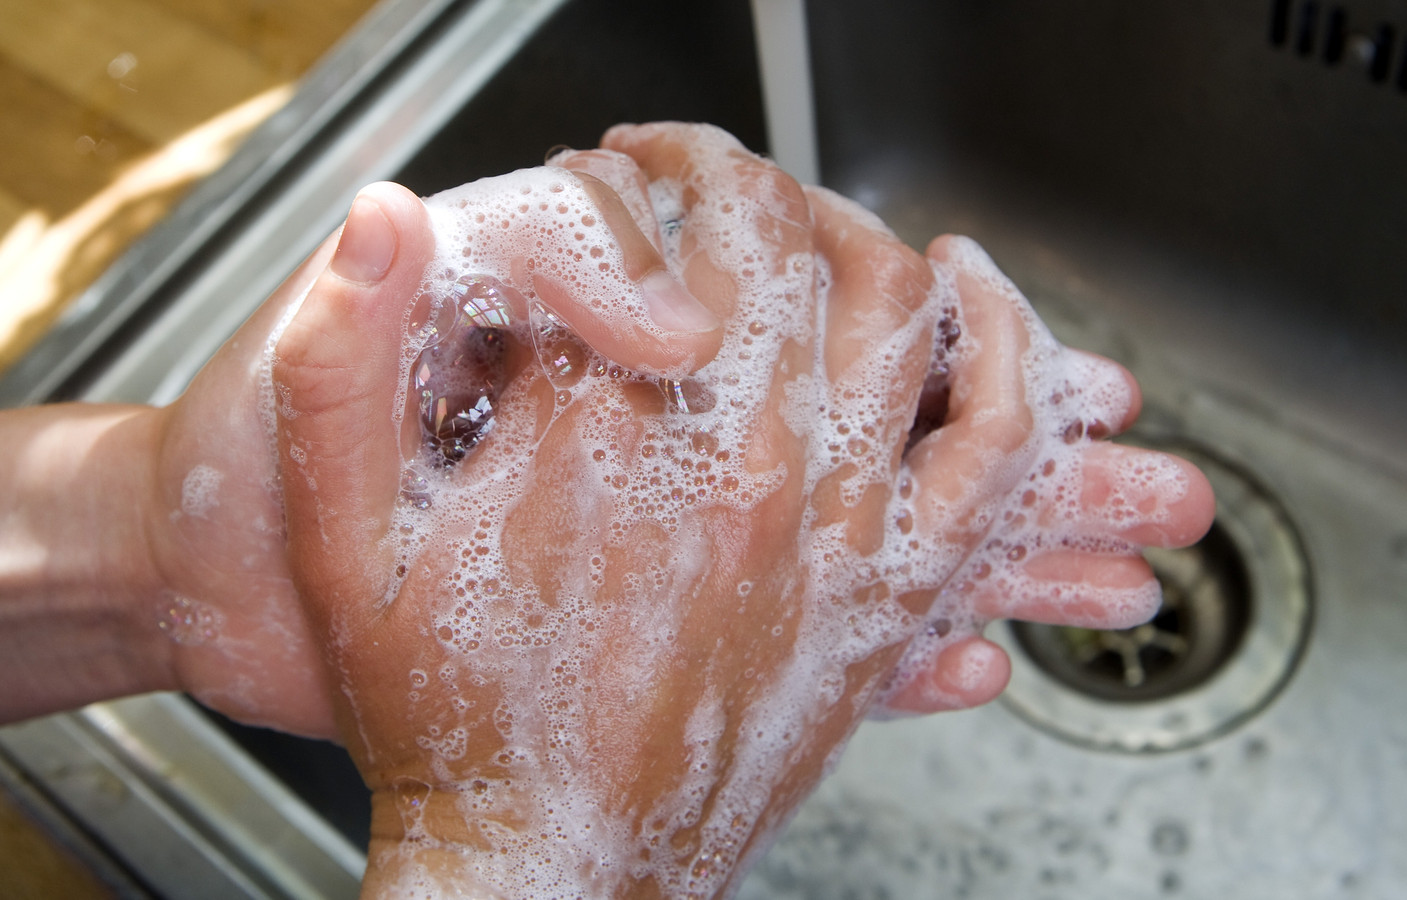 Het aantal coronabesmettingen is opnieuw zorgelijk hoog, terwijl nog maar de helft van alle Nederlanders volledig beschermd is door een vaccin. Adviezen voor afstand houden en vaak handen wassen blijven van kracht.